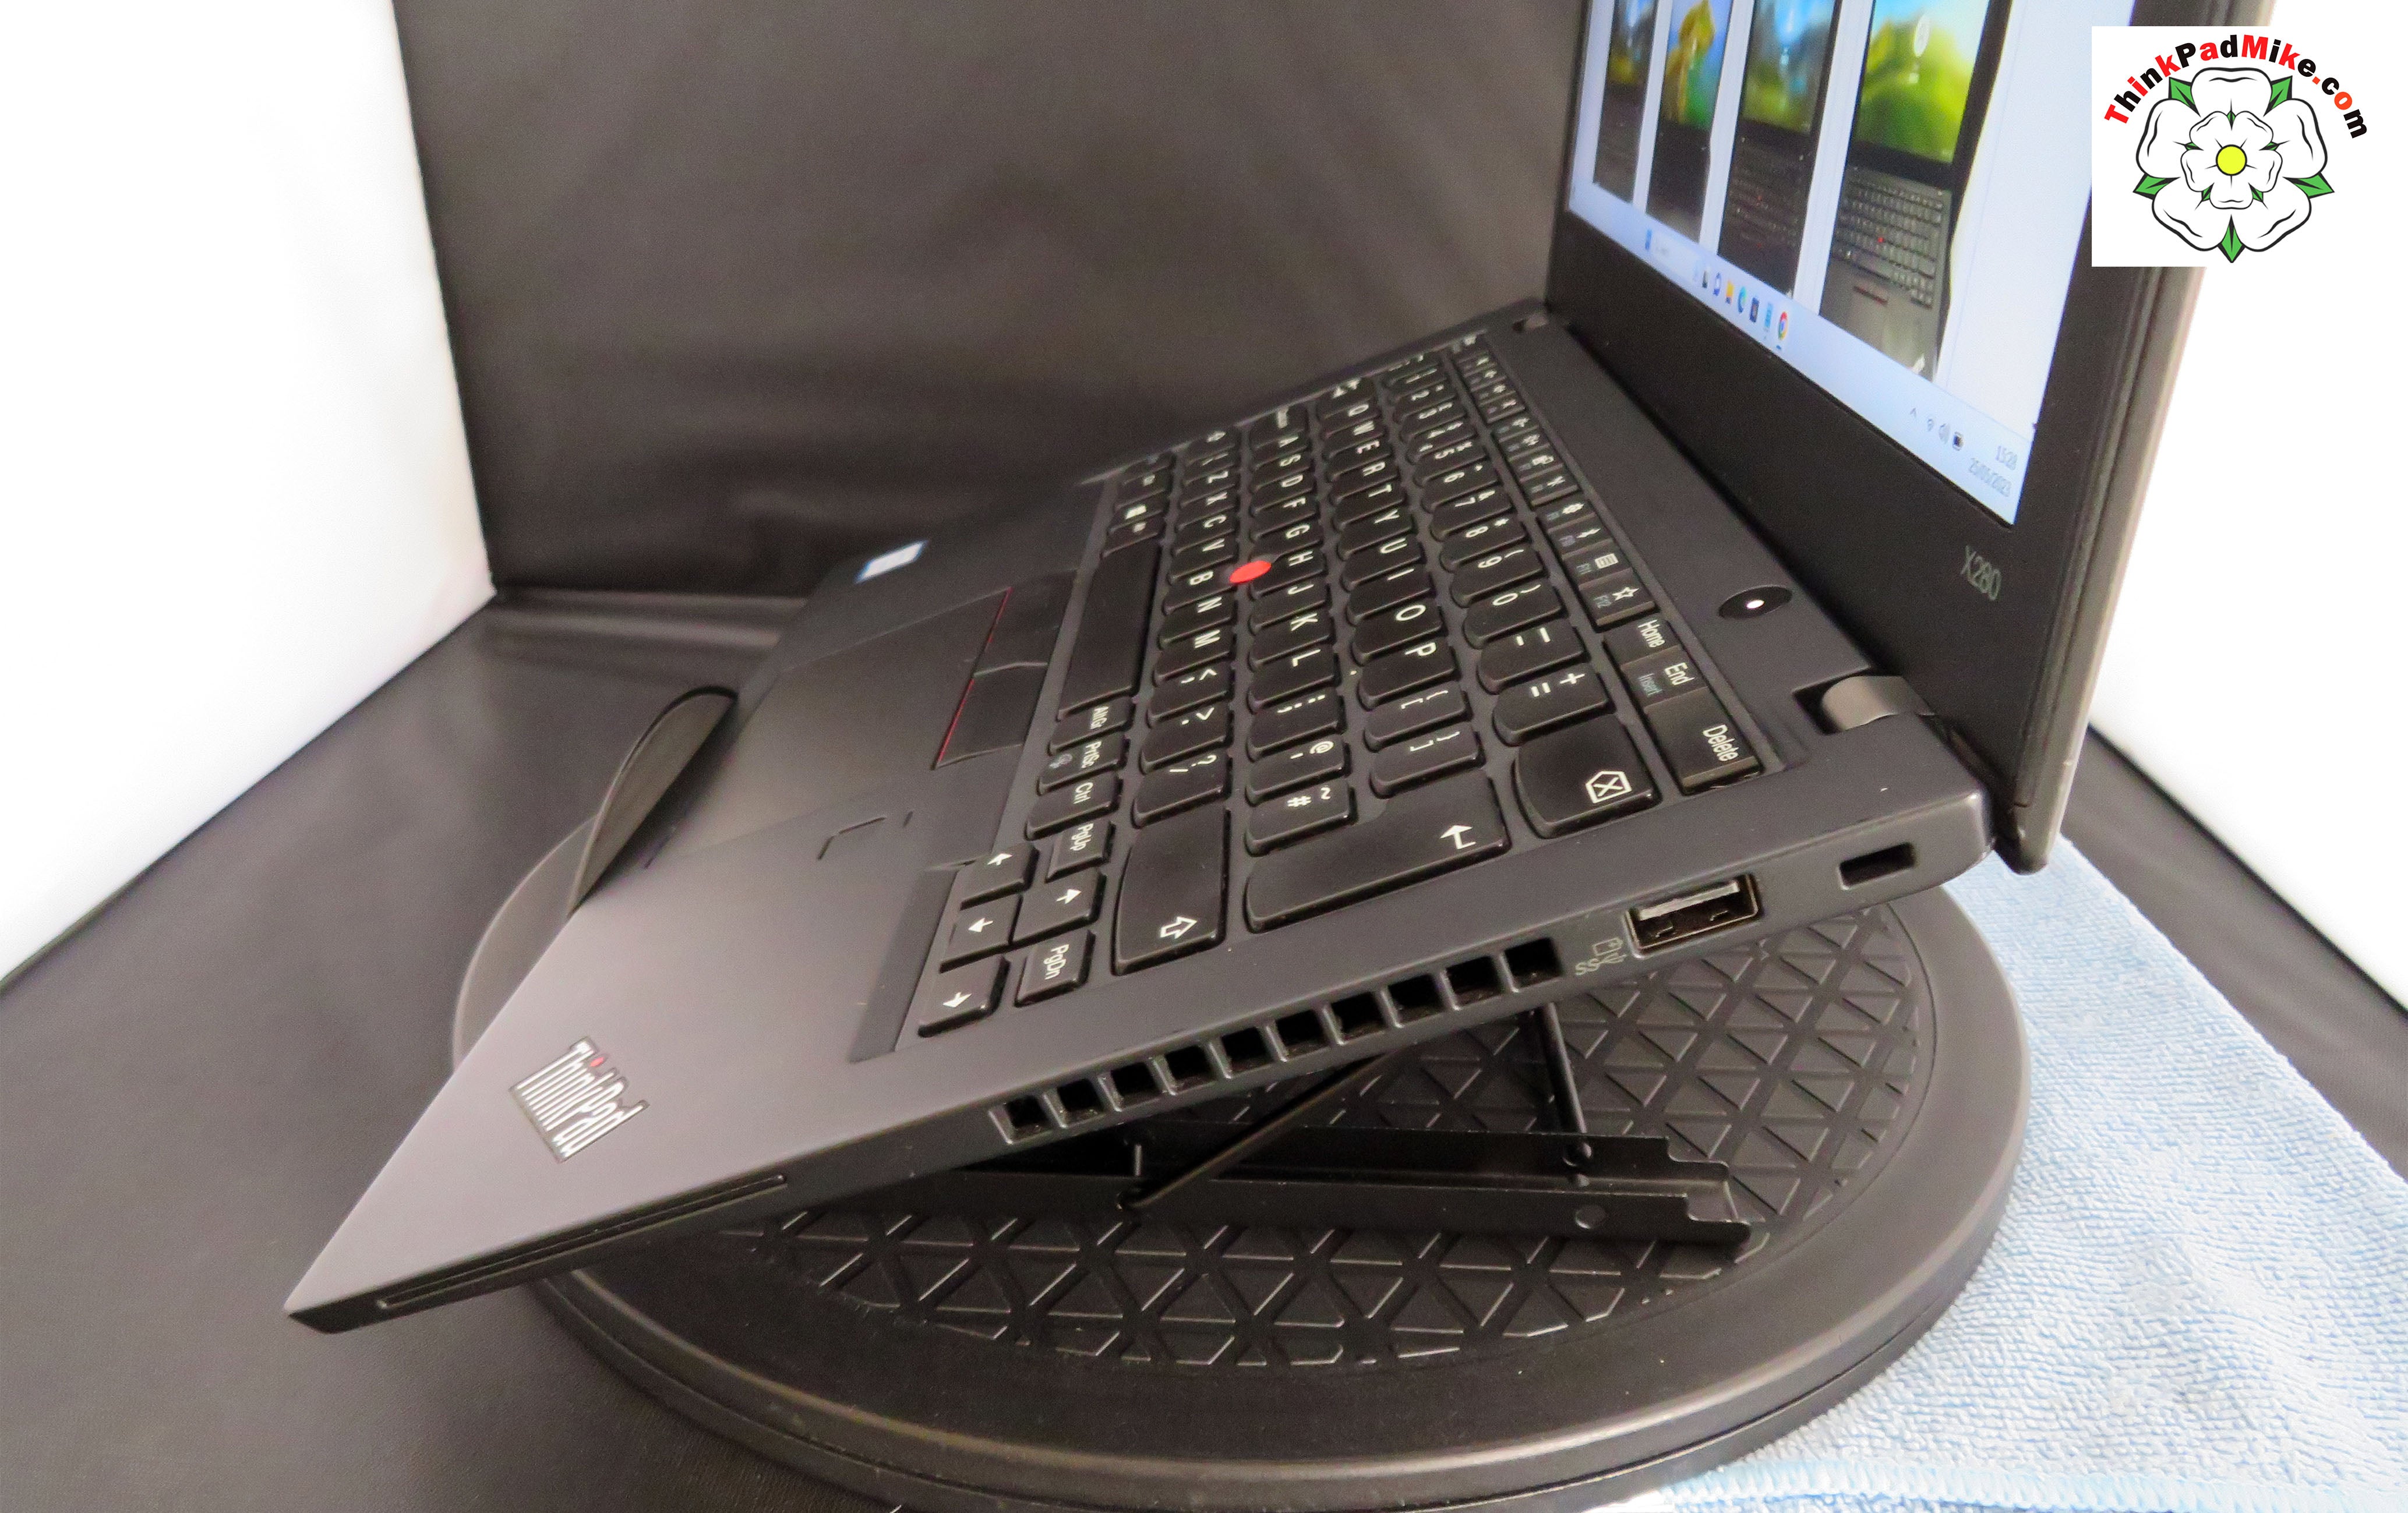 Lenovo ThinkPad x280 i5 8250U 1.6Ghz 8GB RAM 256GB SSD IPS FHD 